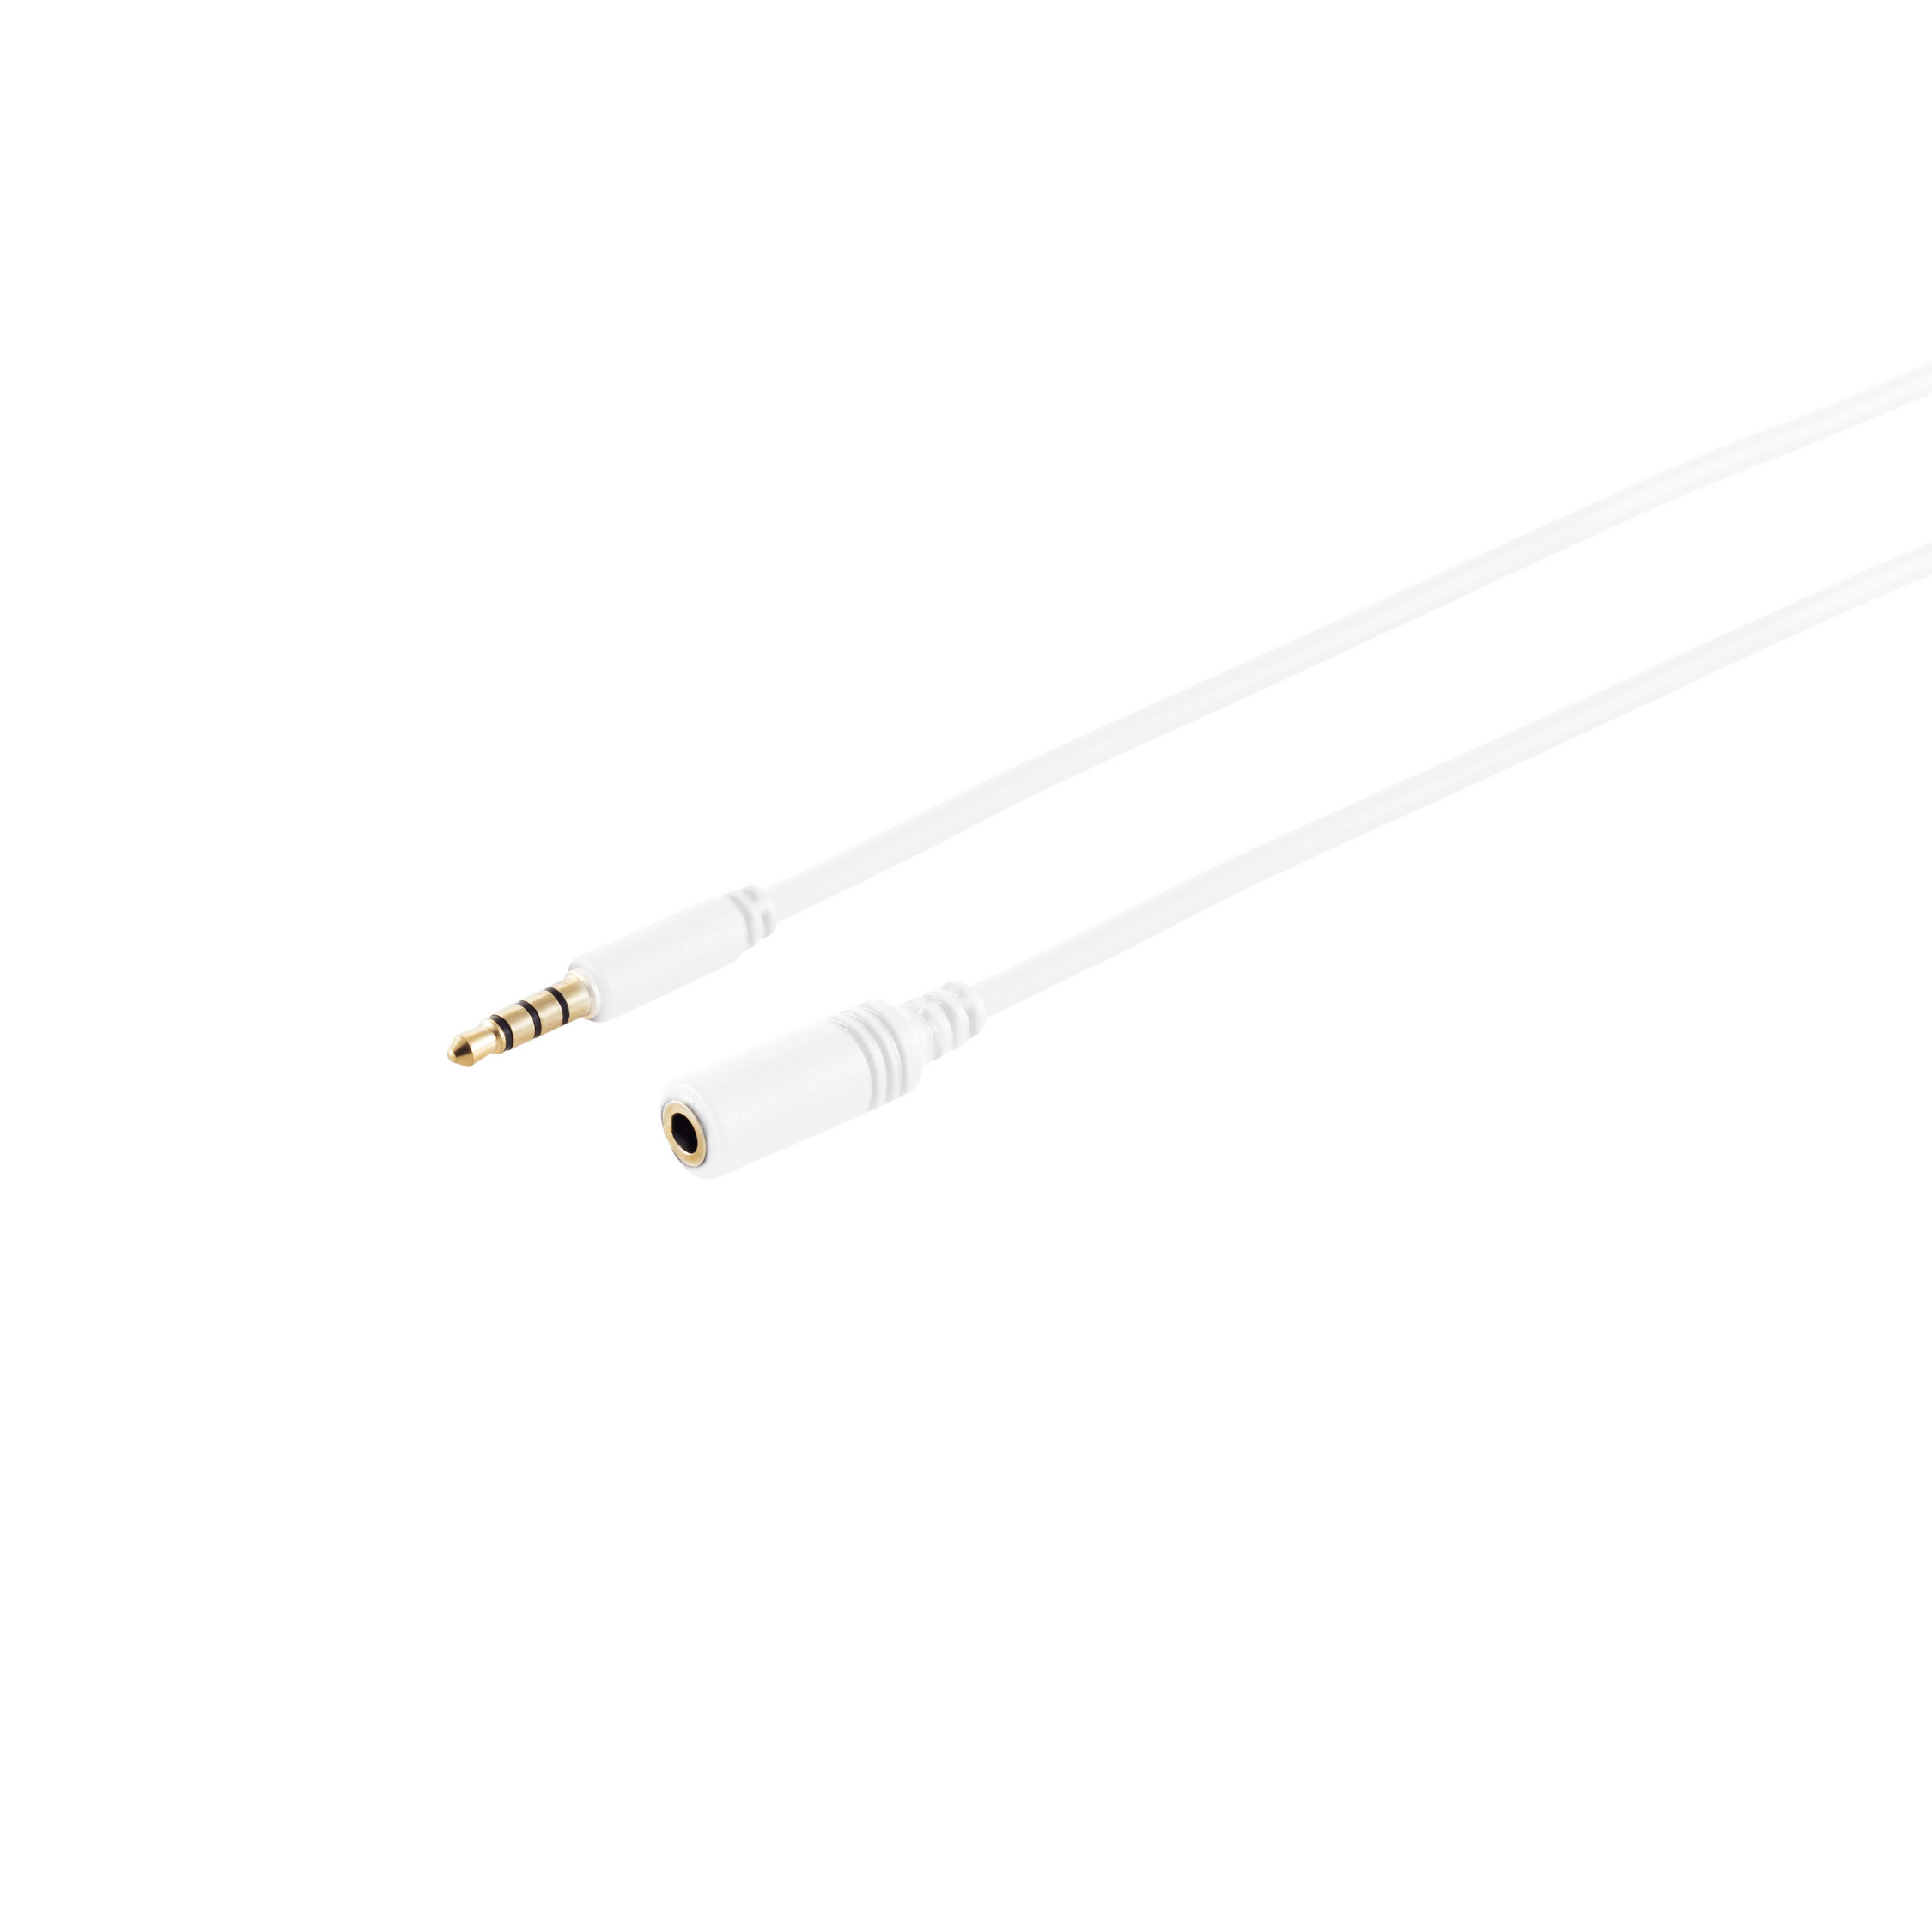 KABELBUDE 4-pol, 3,5mm Stecker/ weiß, 1 Klinkenverlängerung, m 1m, verg. Buchse